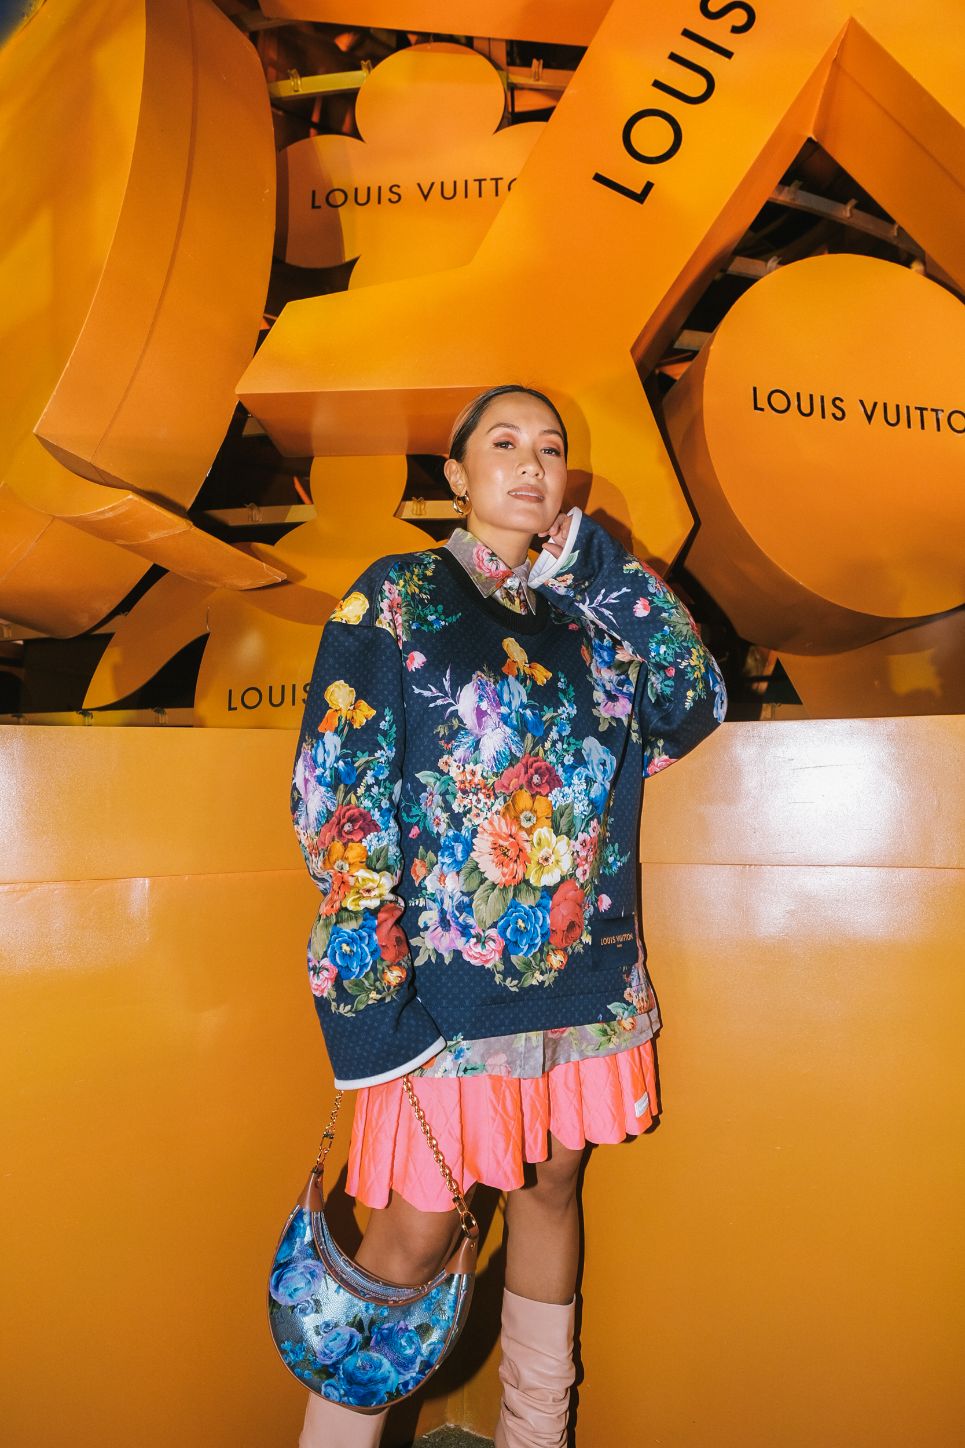 Louis Vuitton - Laureen Uy